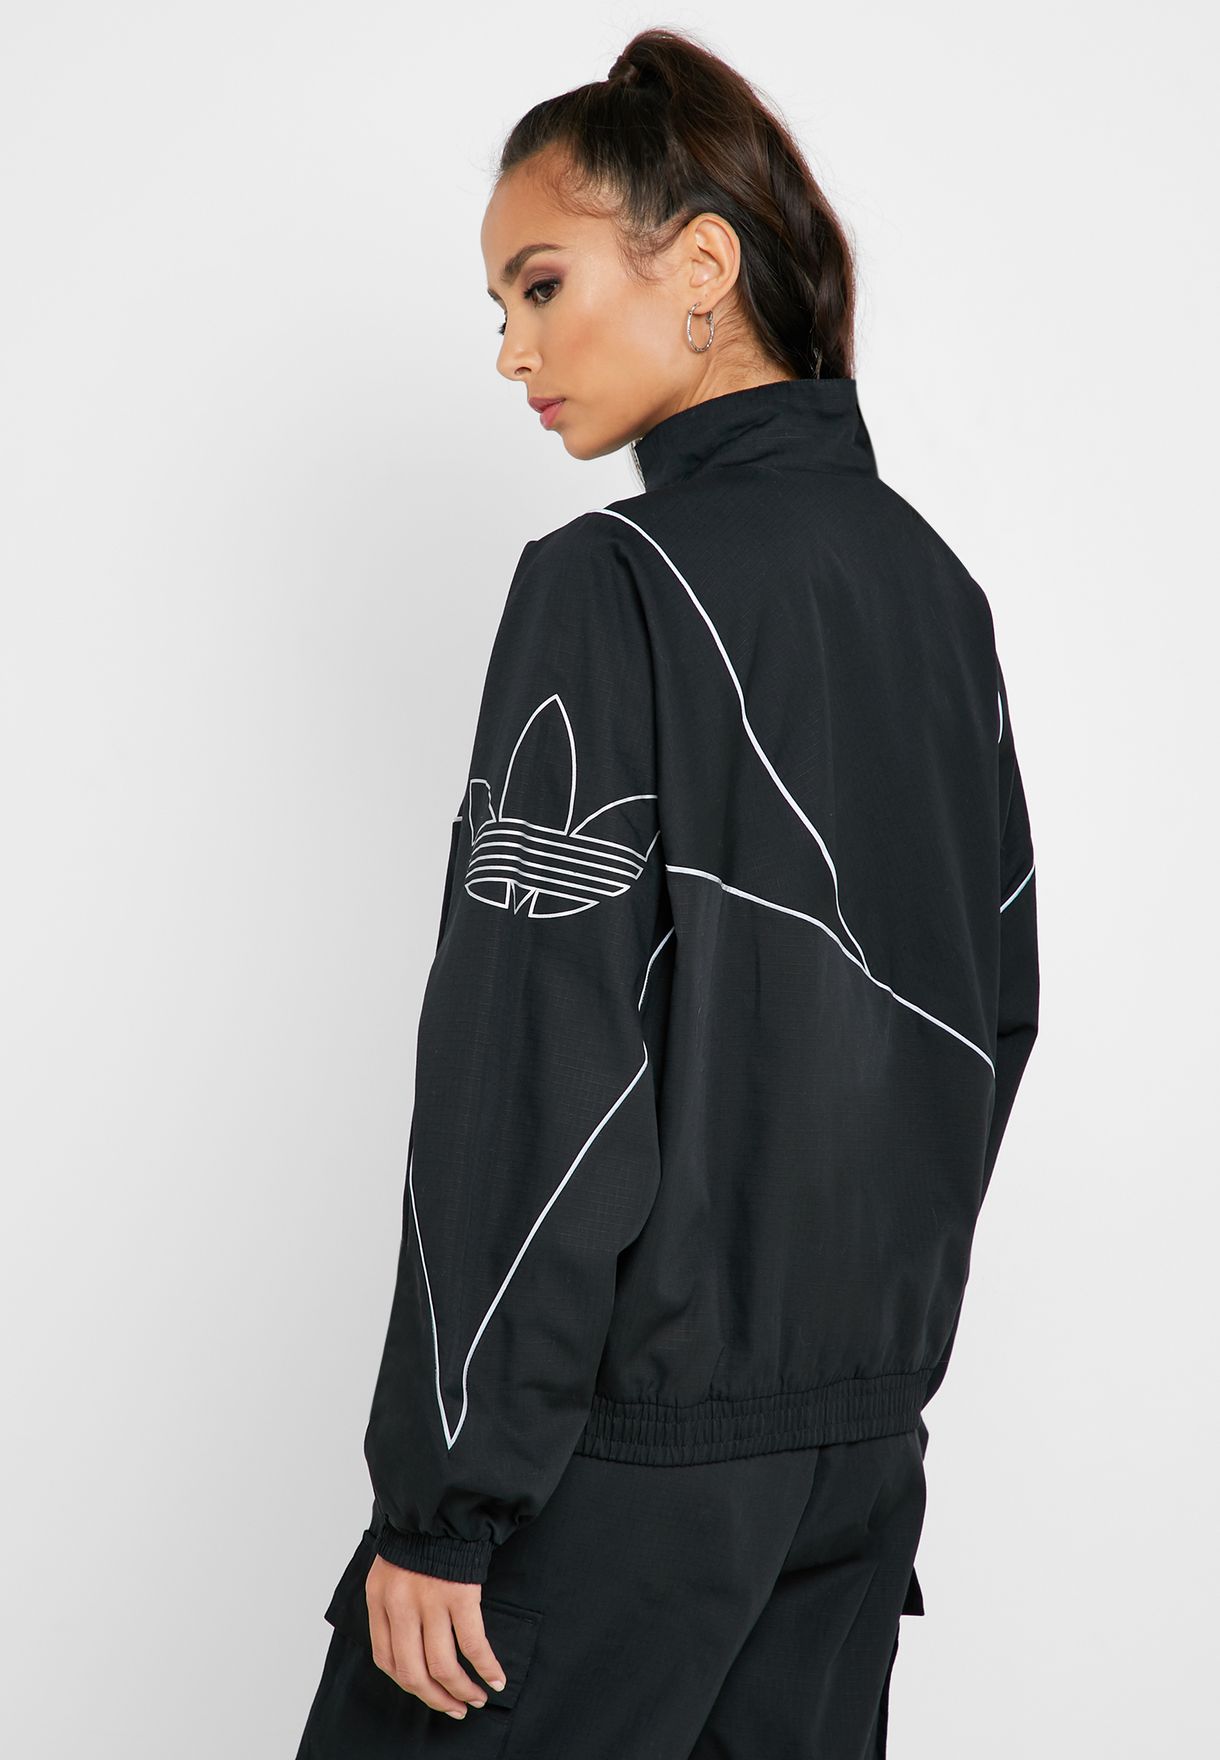 adidas track jacket reflective